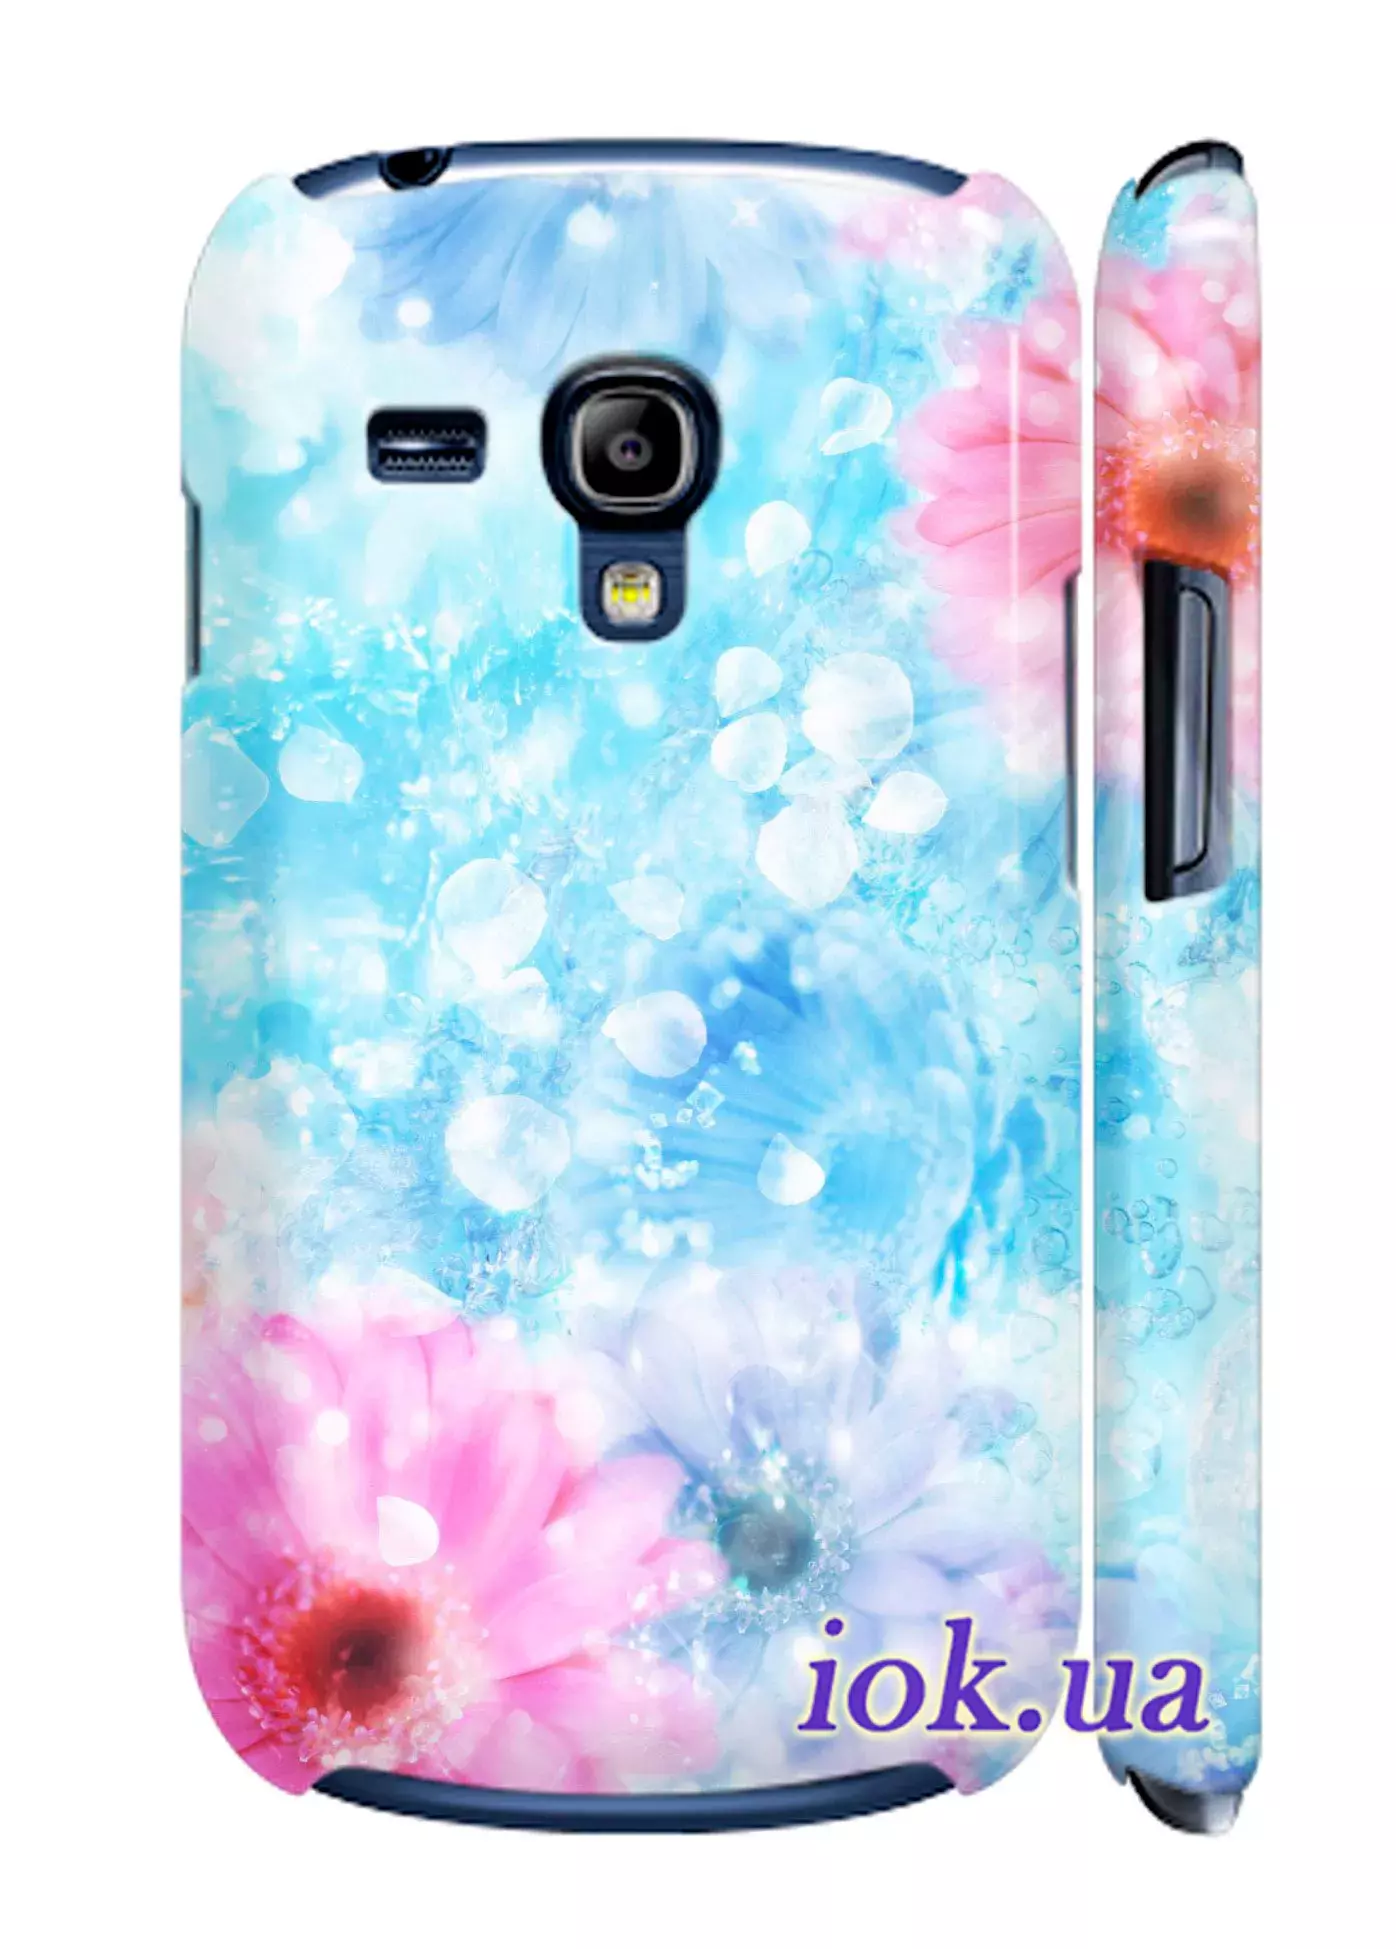 Чехол для Galaxy S3 Mini - Цветы в воде